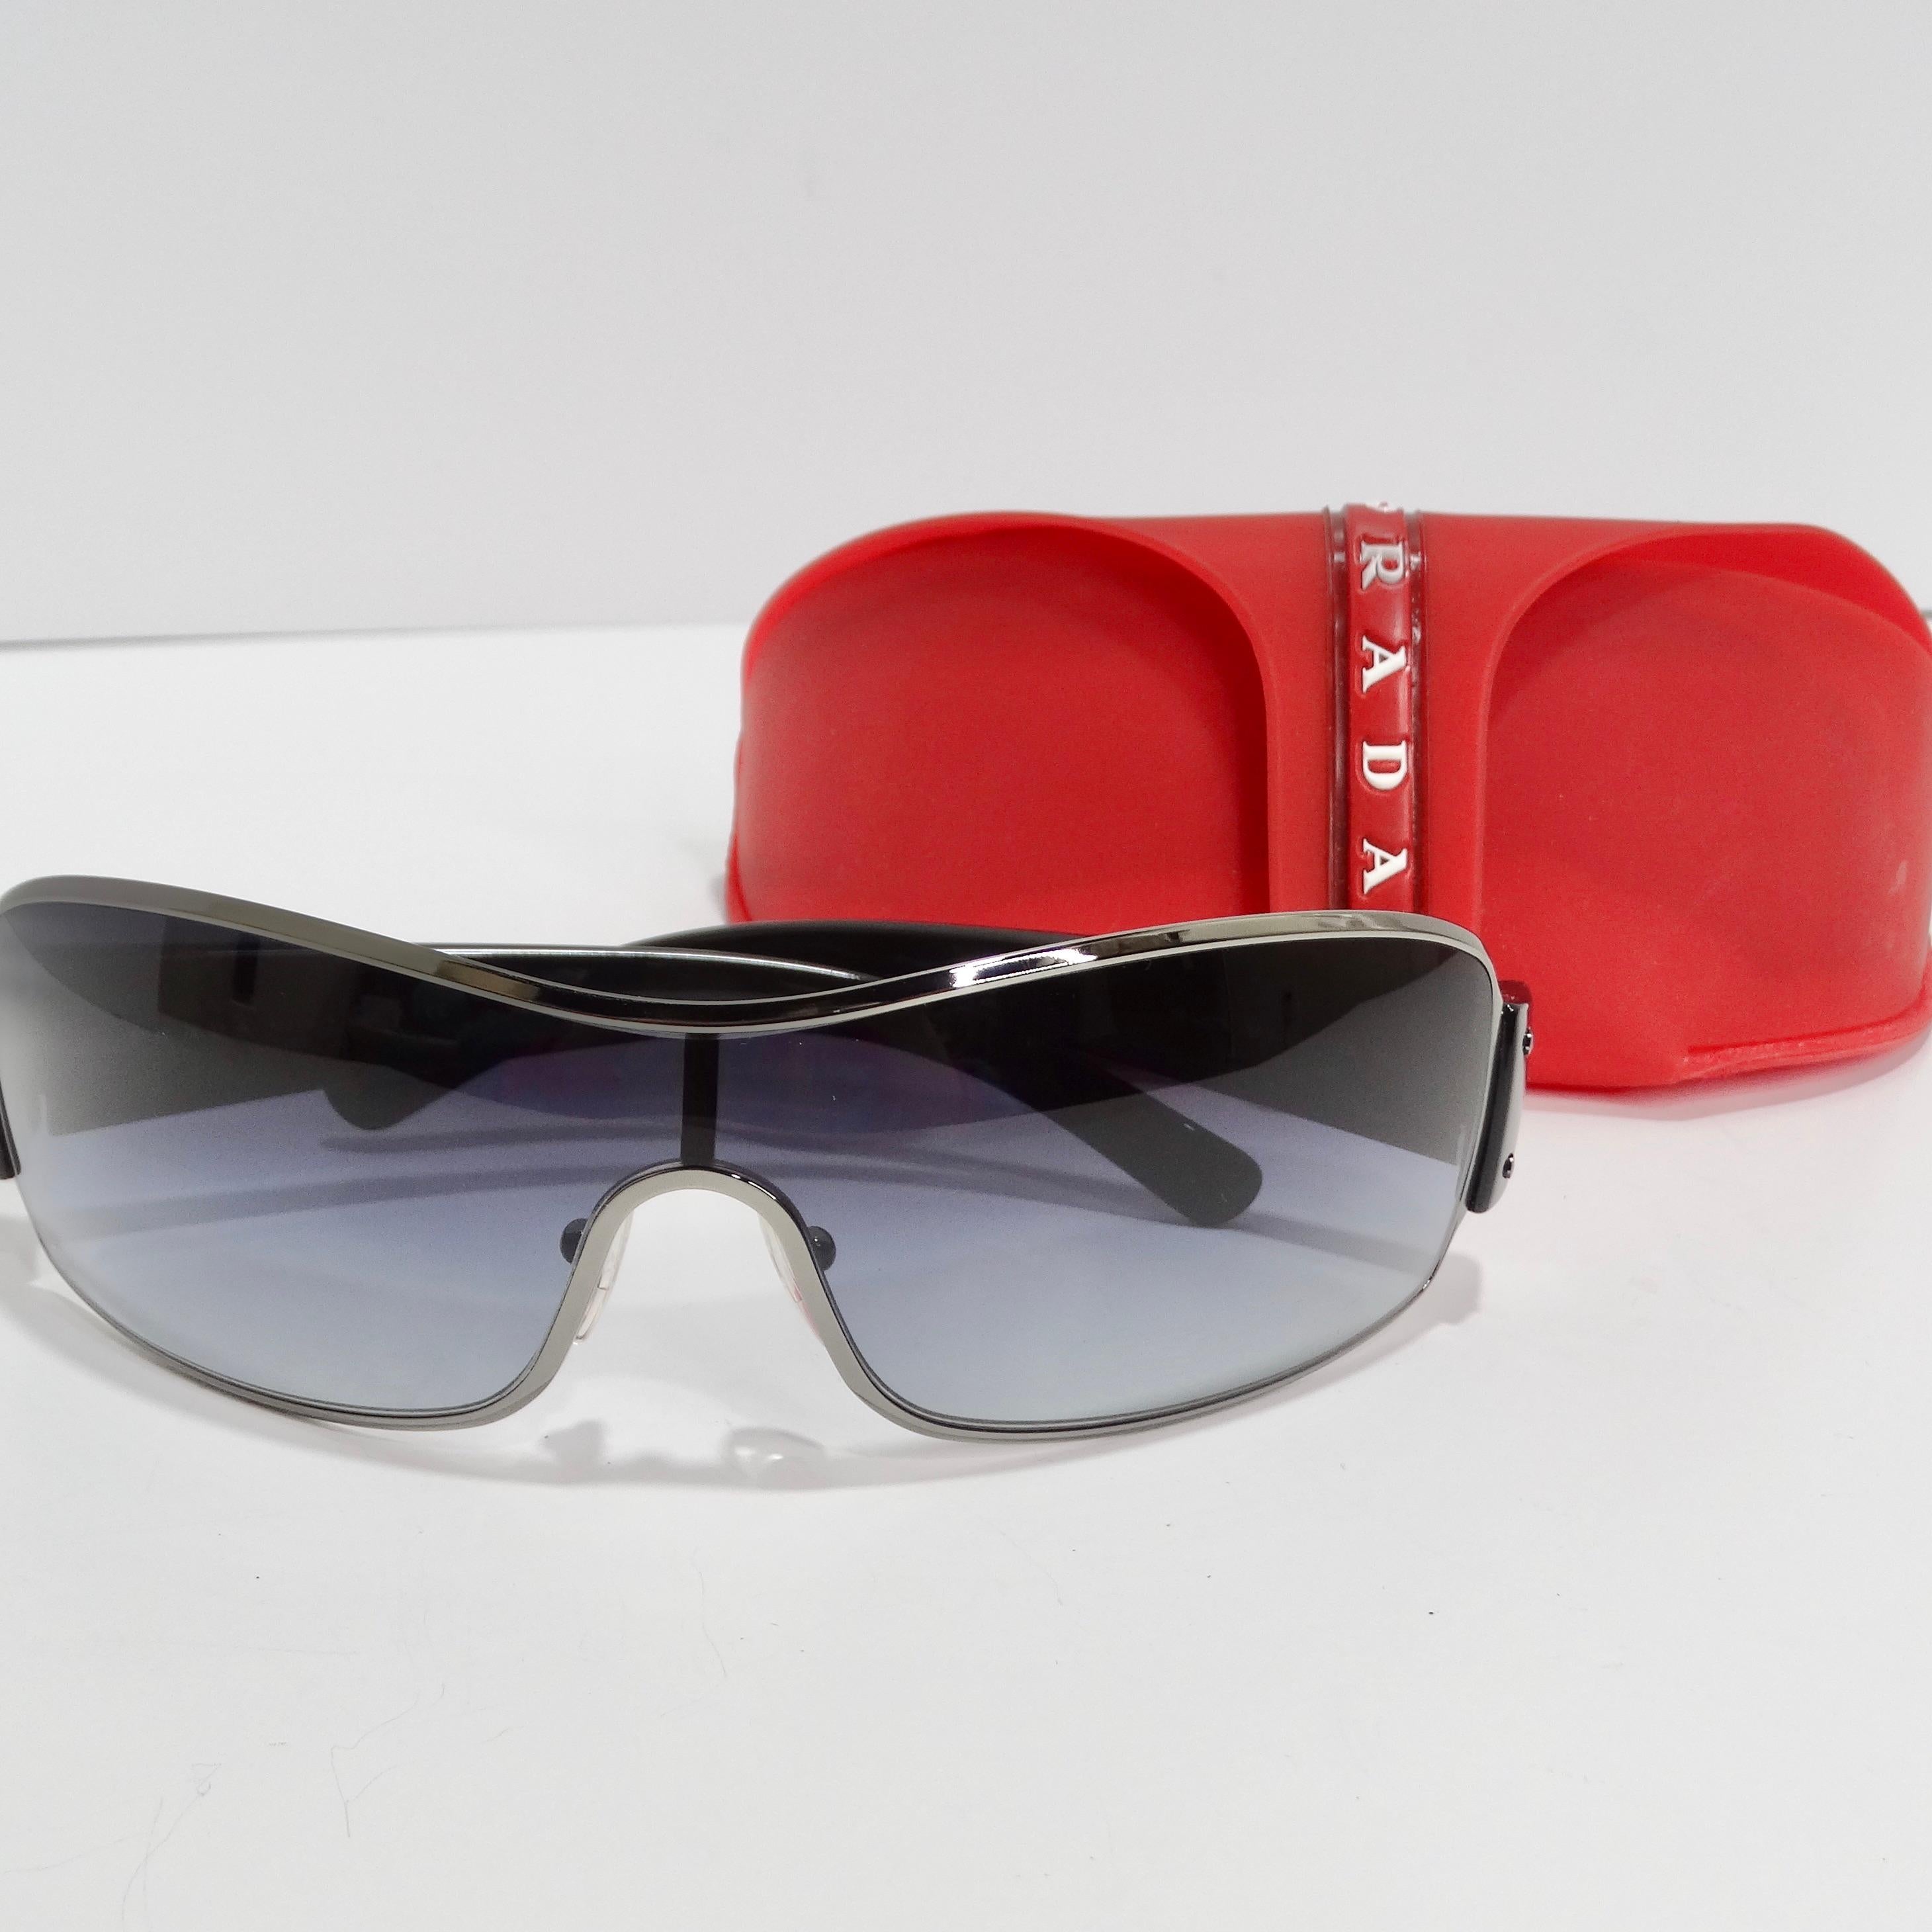 Prada 1990s Silver Tone Shield Sunglasses 5